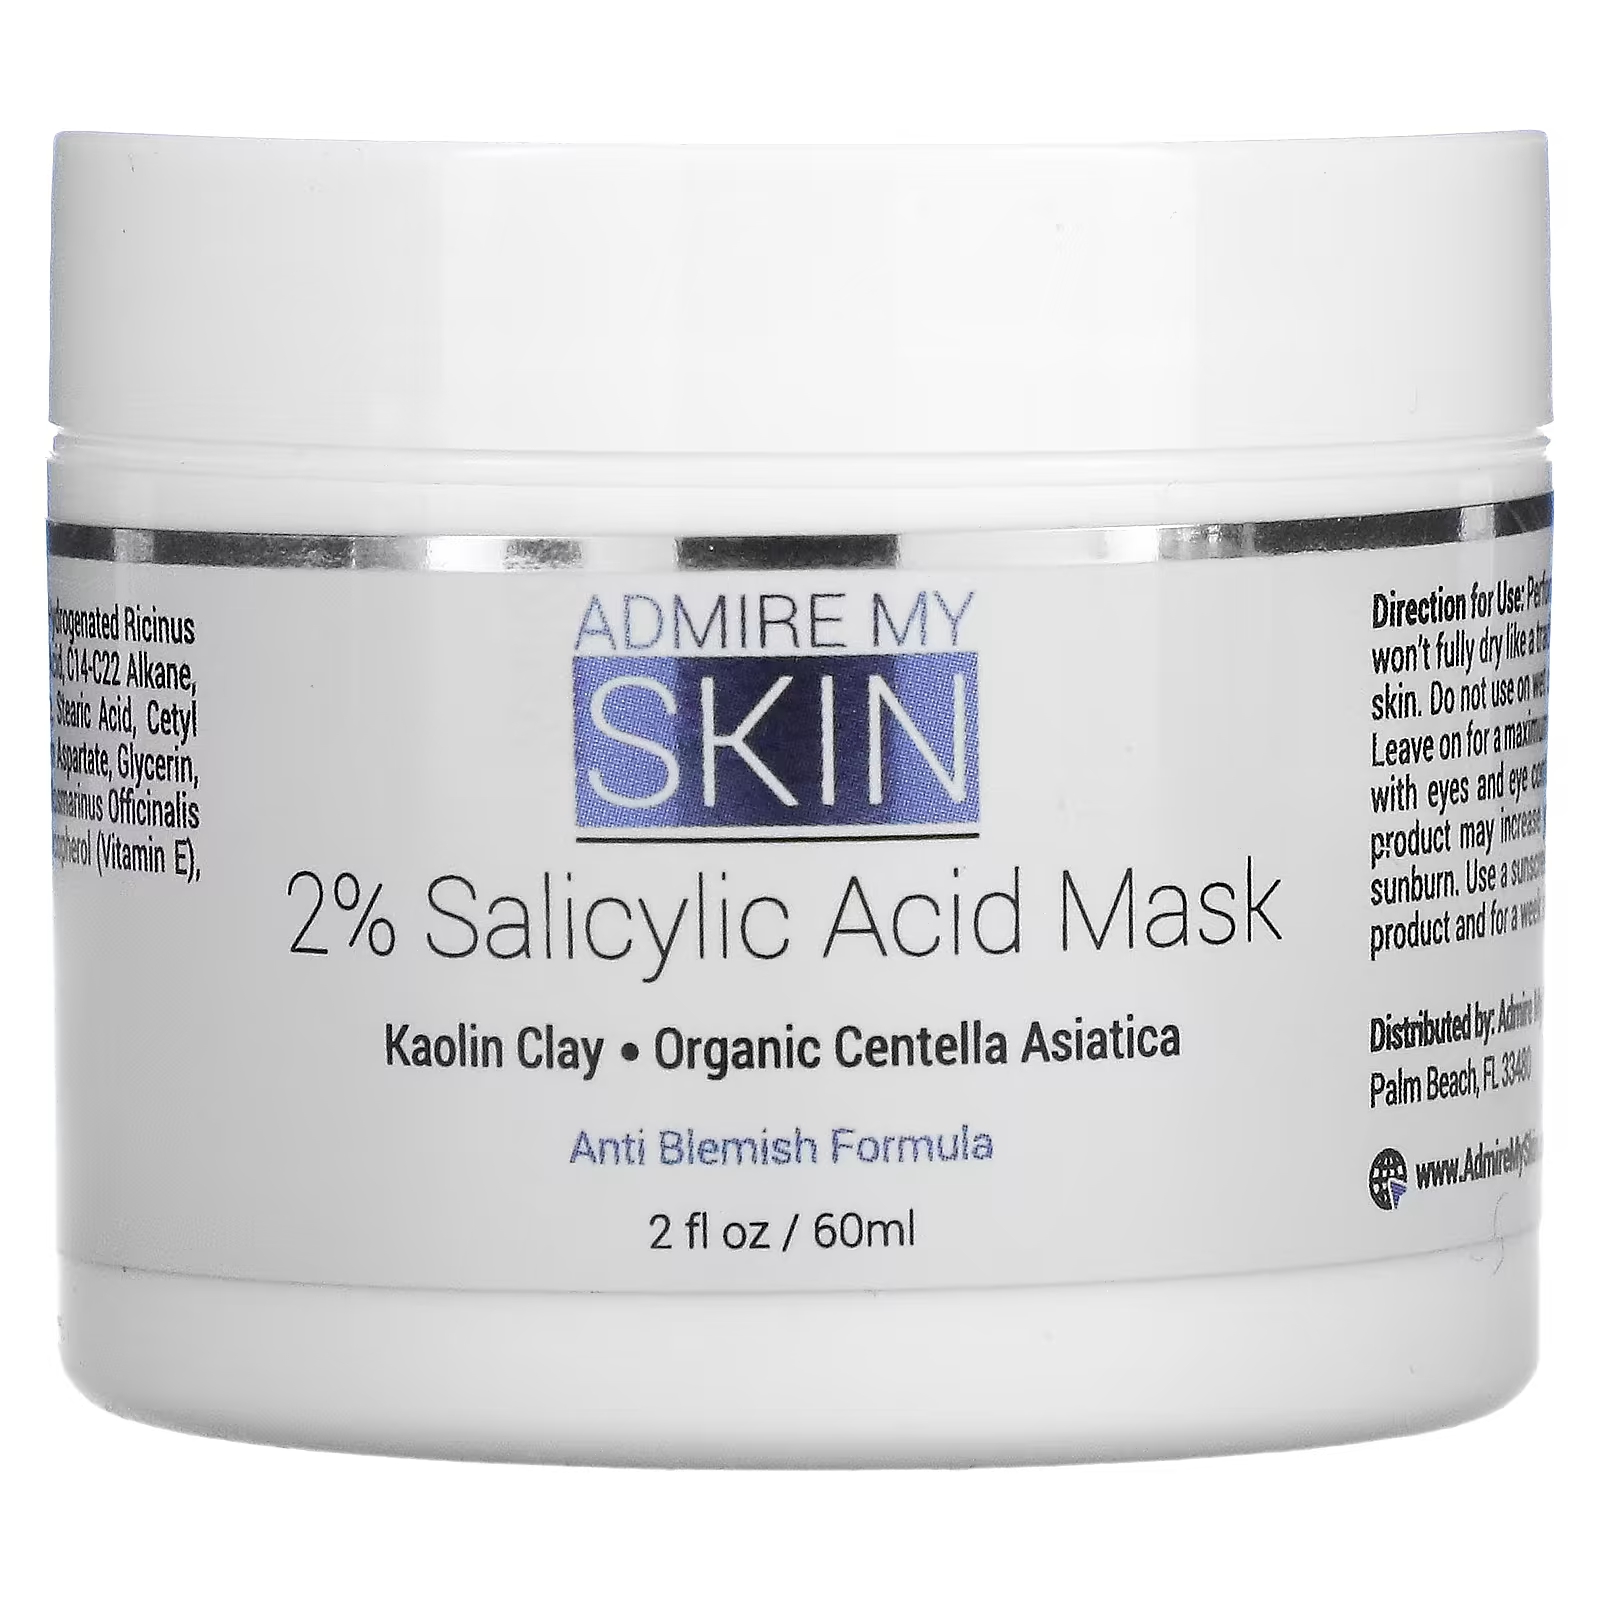 Косметическая маска Admire My Skin с 2% салициловой кислотой, 2 жидких унции (60 мл) admire my skin маска с 2% салициловой кислотой 60 мл 2 жидк унции